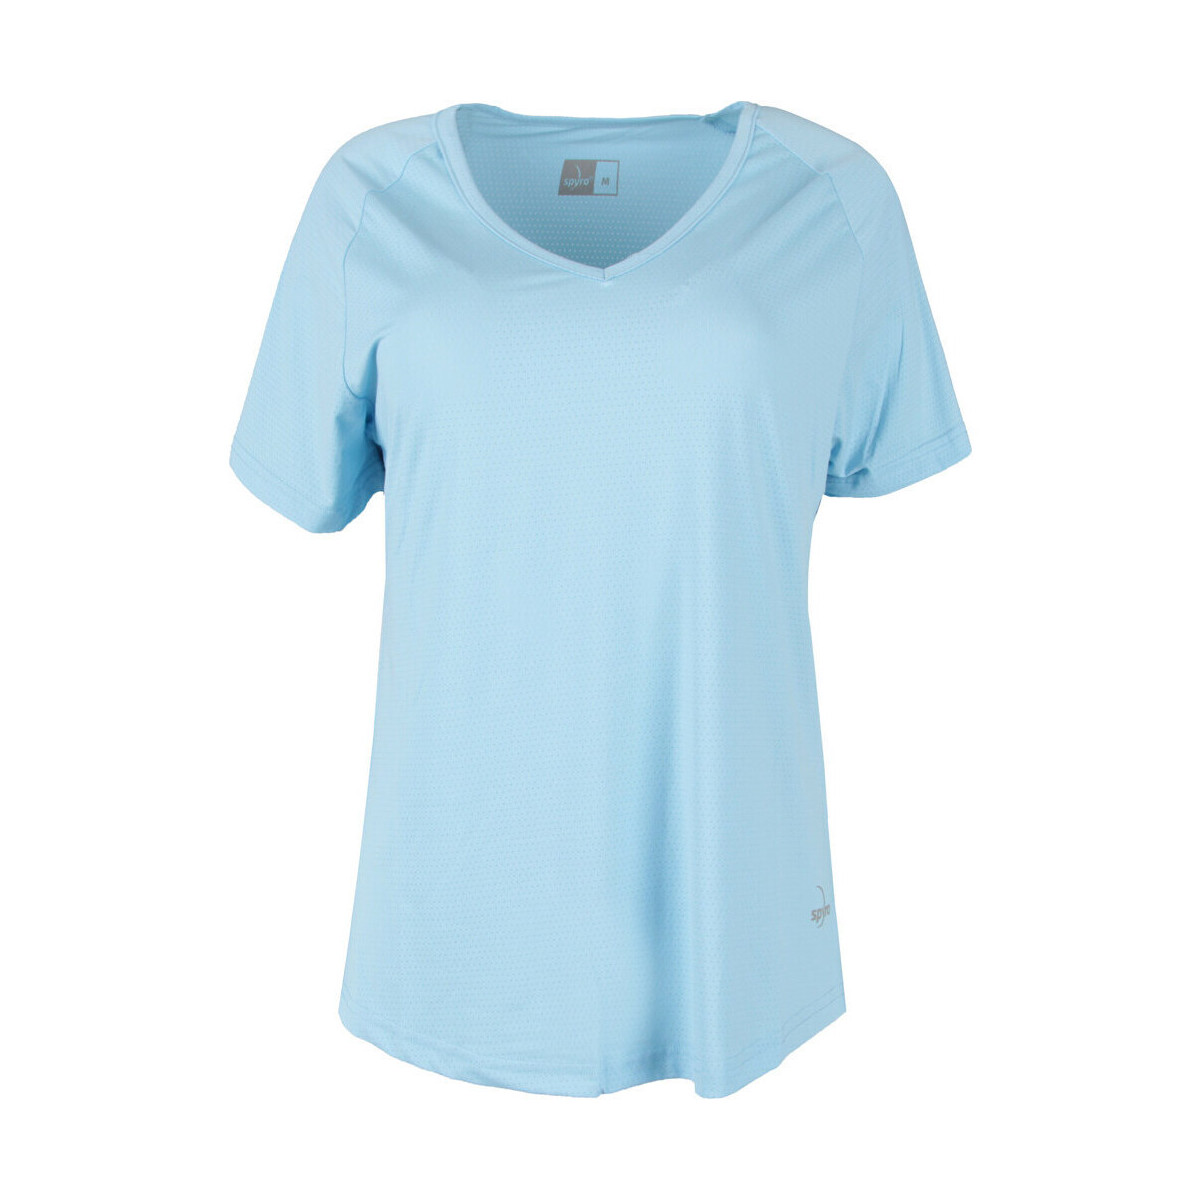 Vêtements Femme Chemises / Chemisiers Spyro T- GOHR Bleu